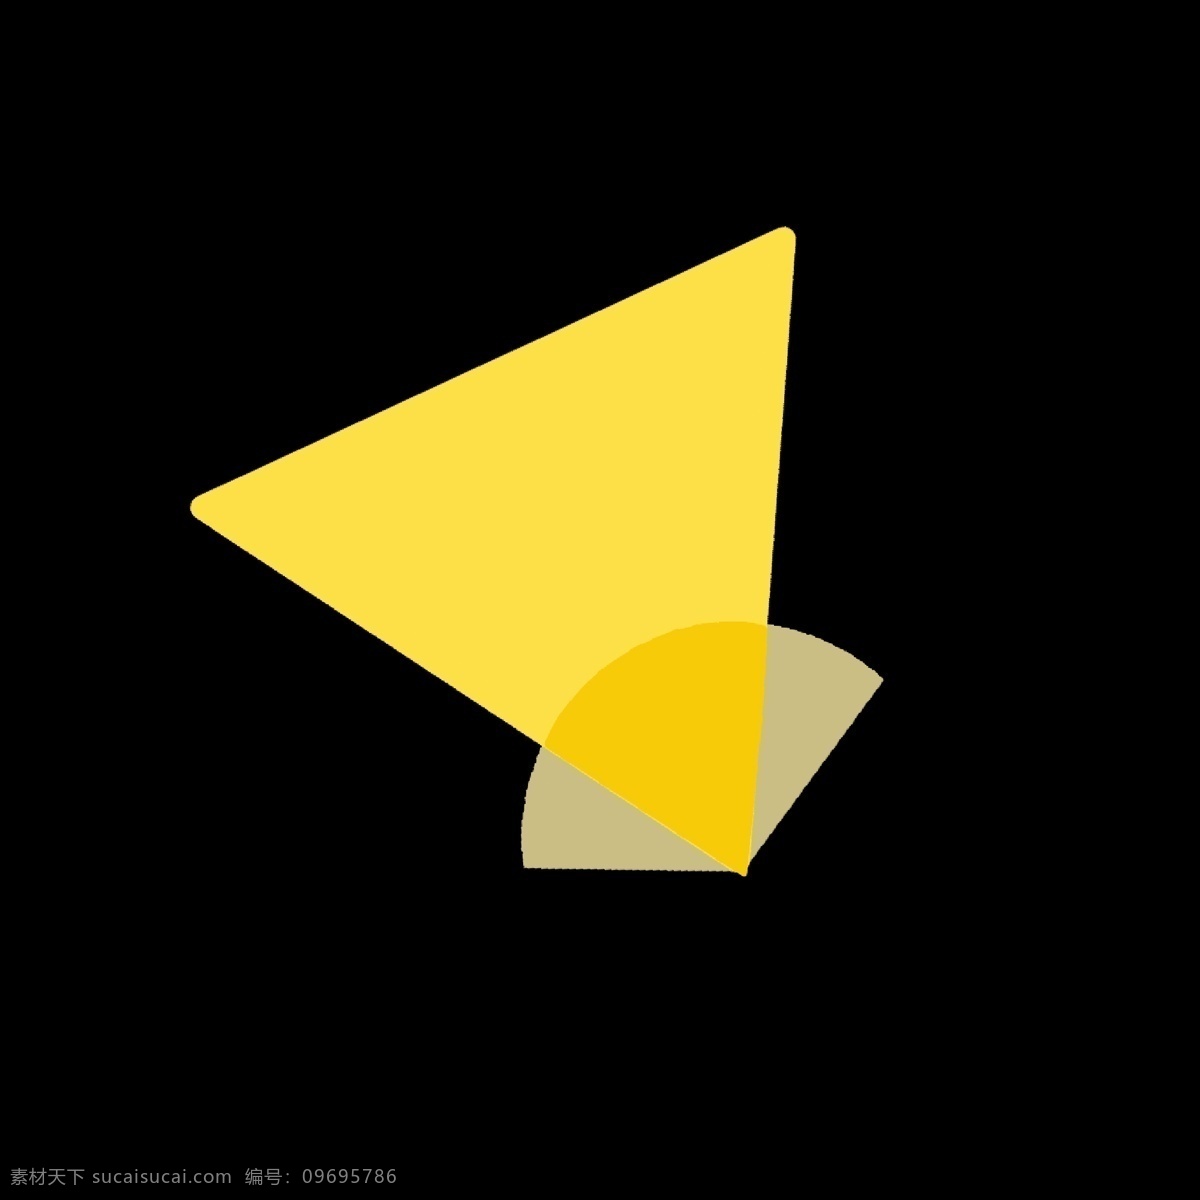 黄色 三角形 样式 小 图标 半圆 柠檬黄 图案 几何形体 形状 卡通 简洁 简单 简约 ppt可用 网络 视频图标